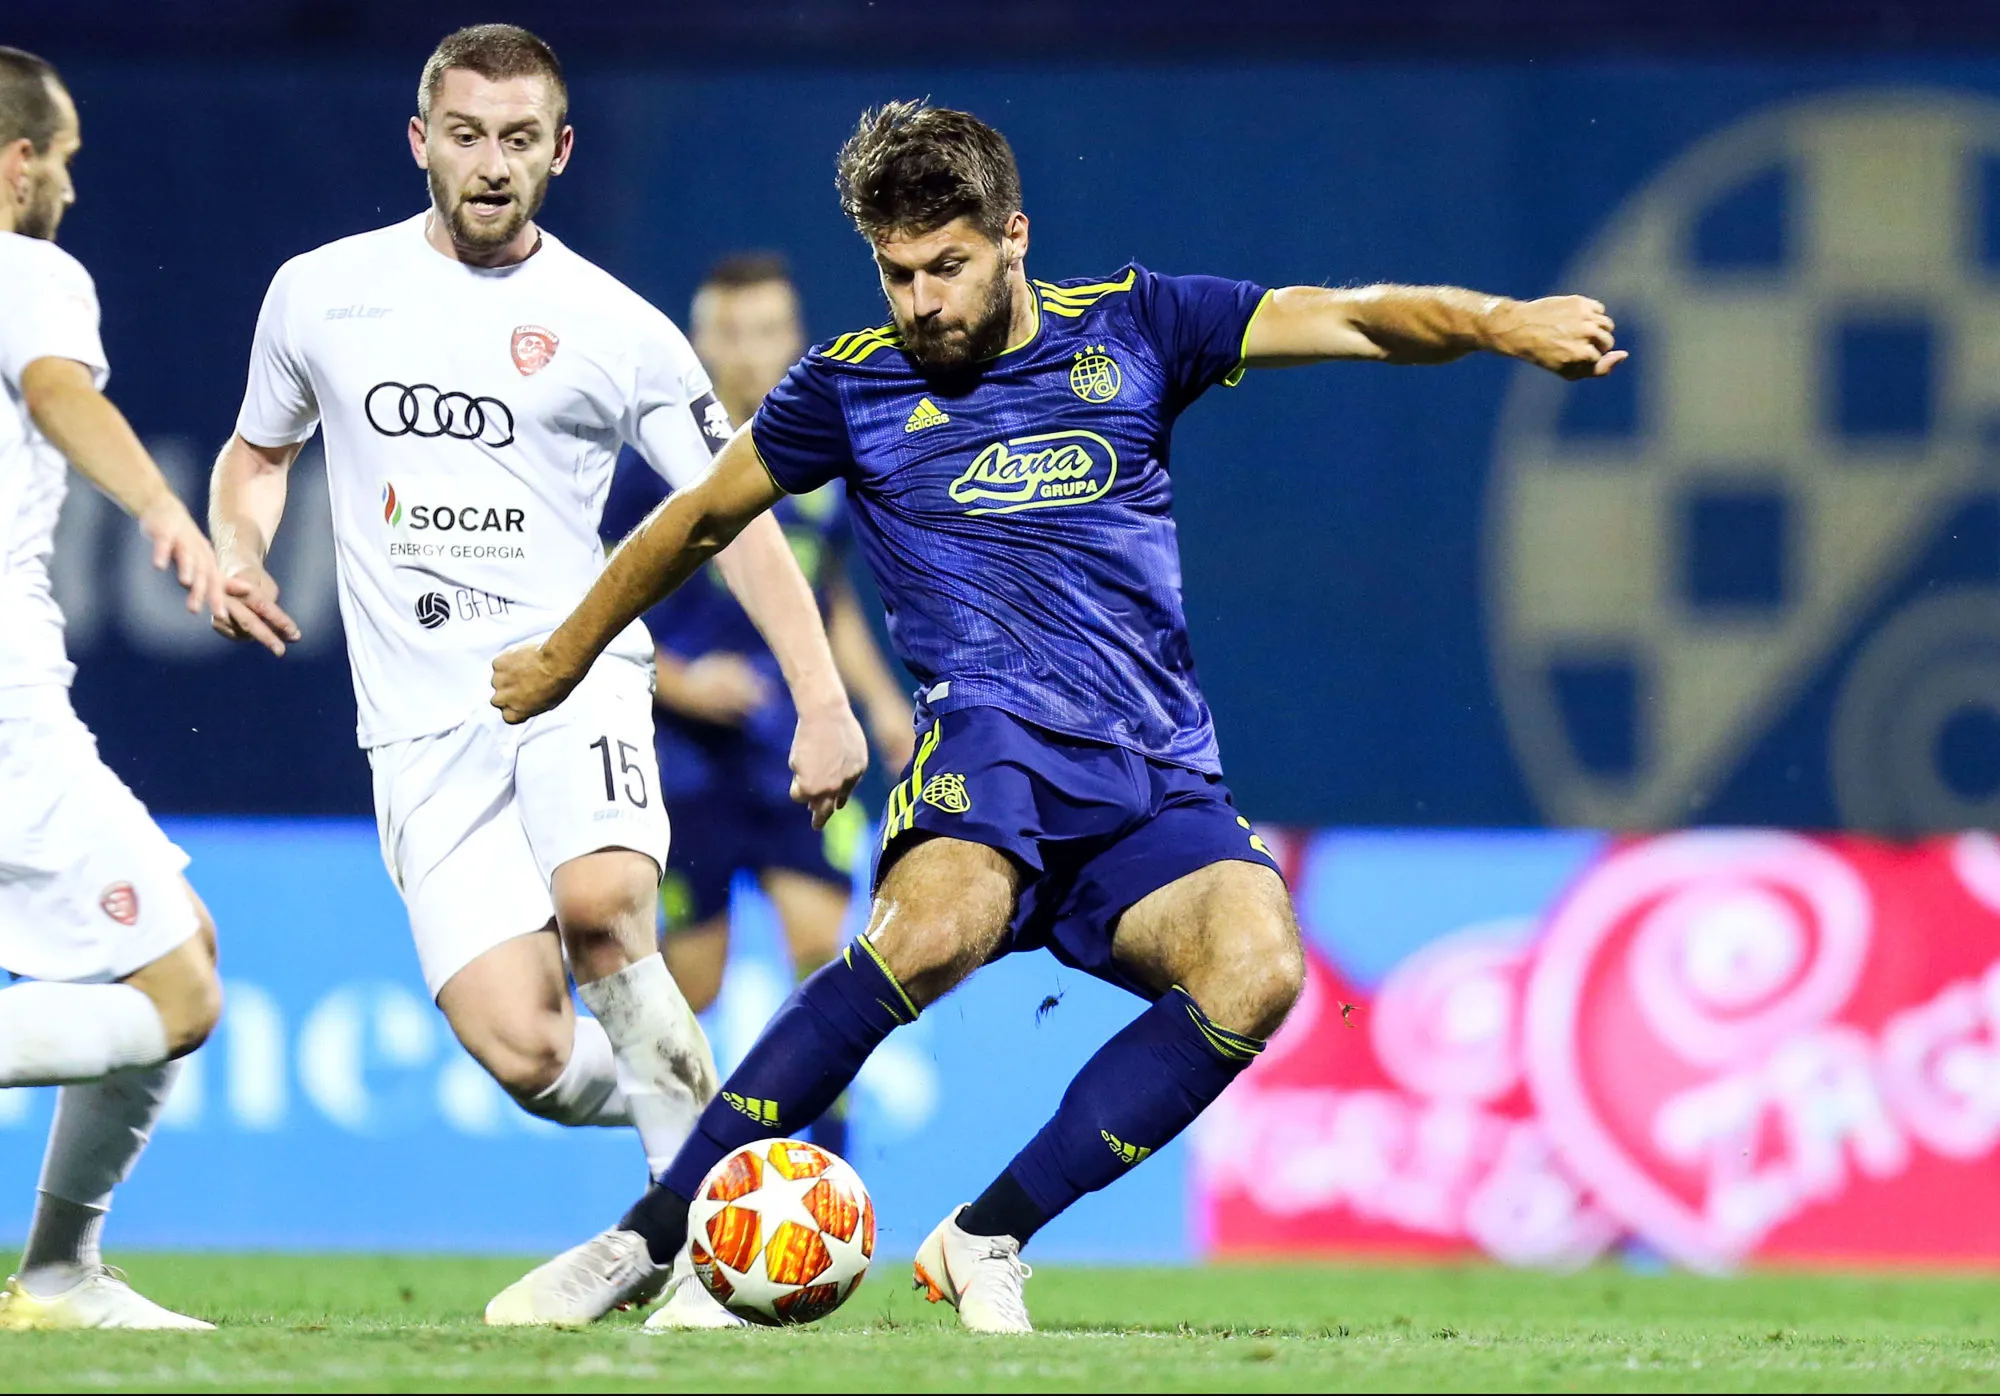 Pronostic Dinamo Zagreb Ferencvaros : Analyse, prono et cotes du match de Ligue des Champions